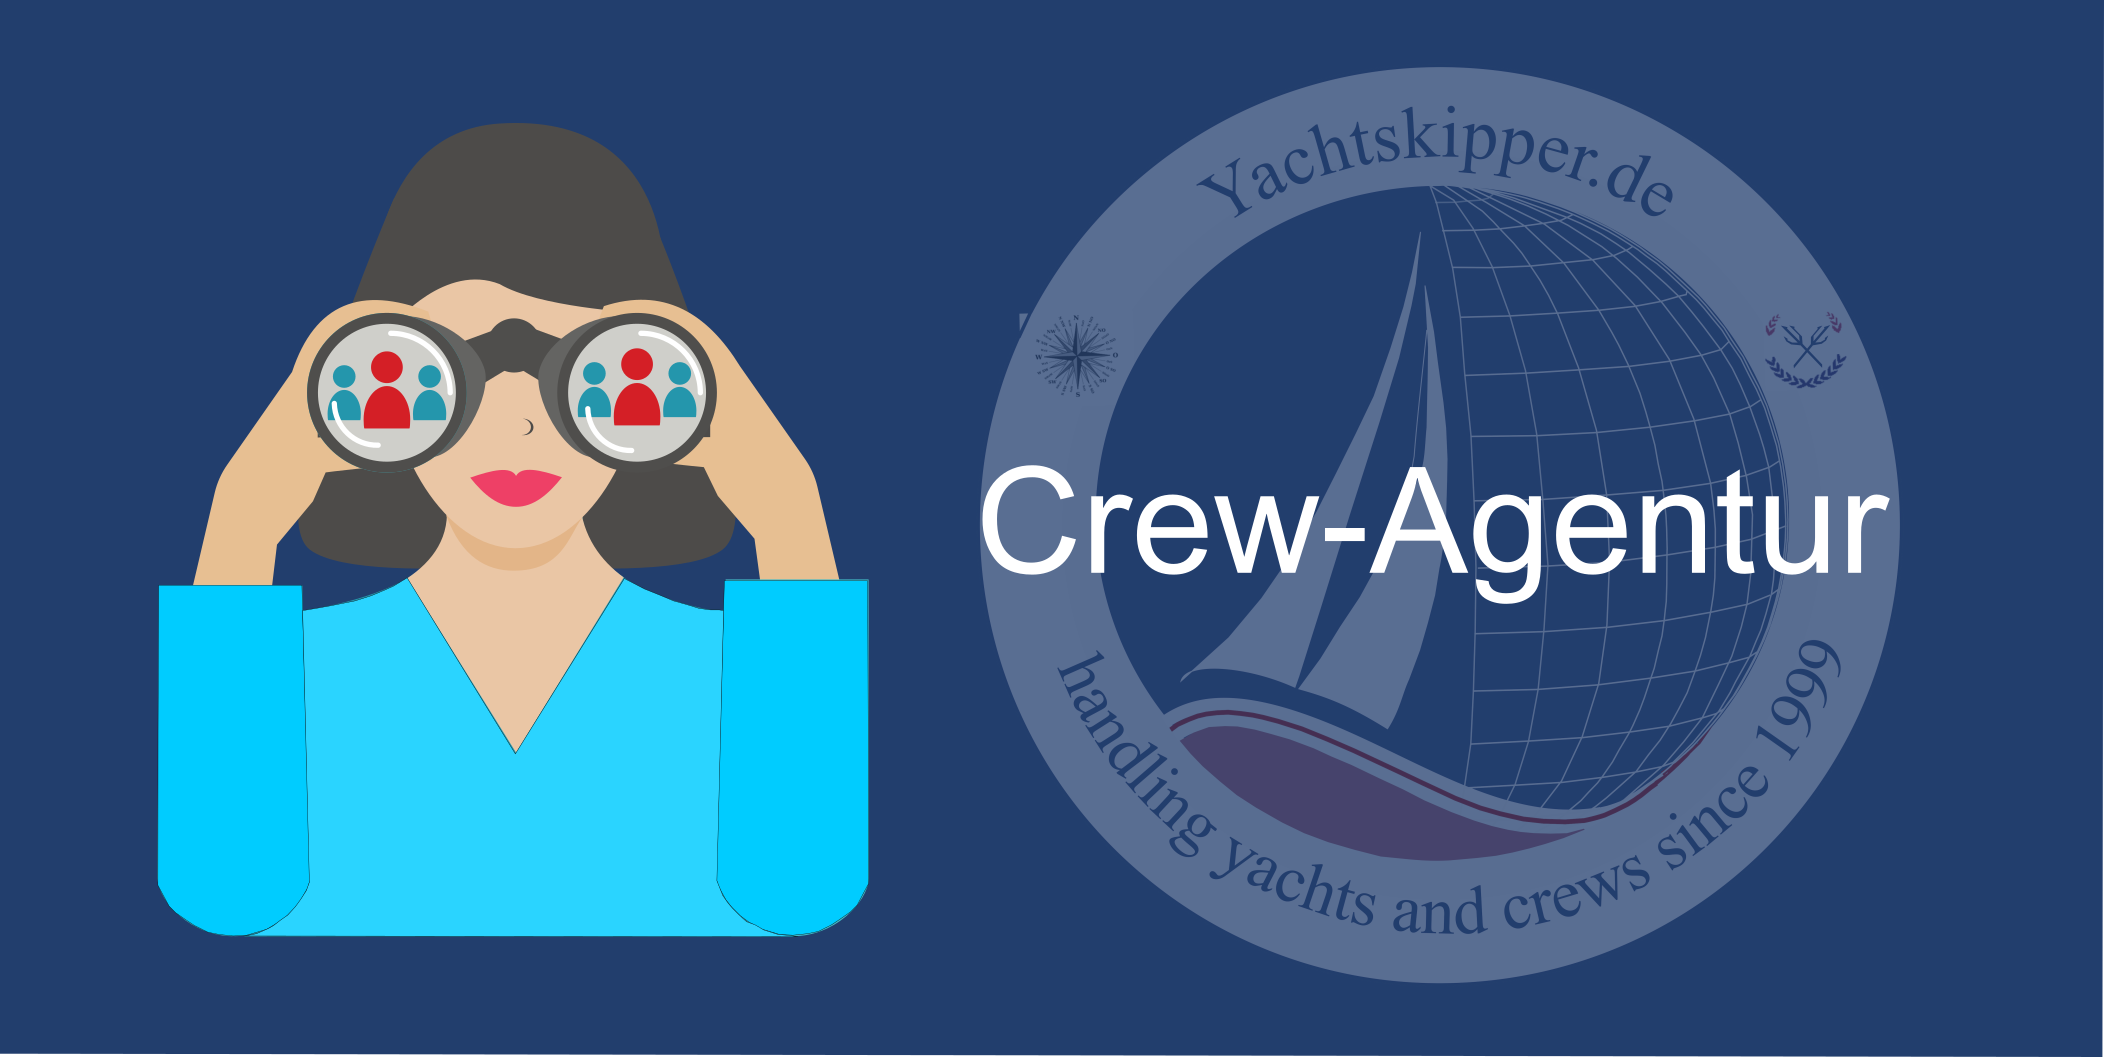 Crew-Agentur